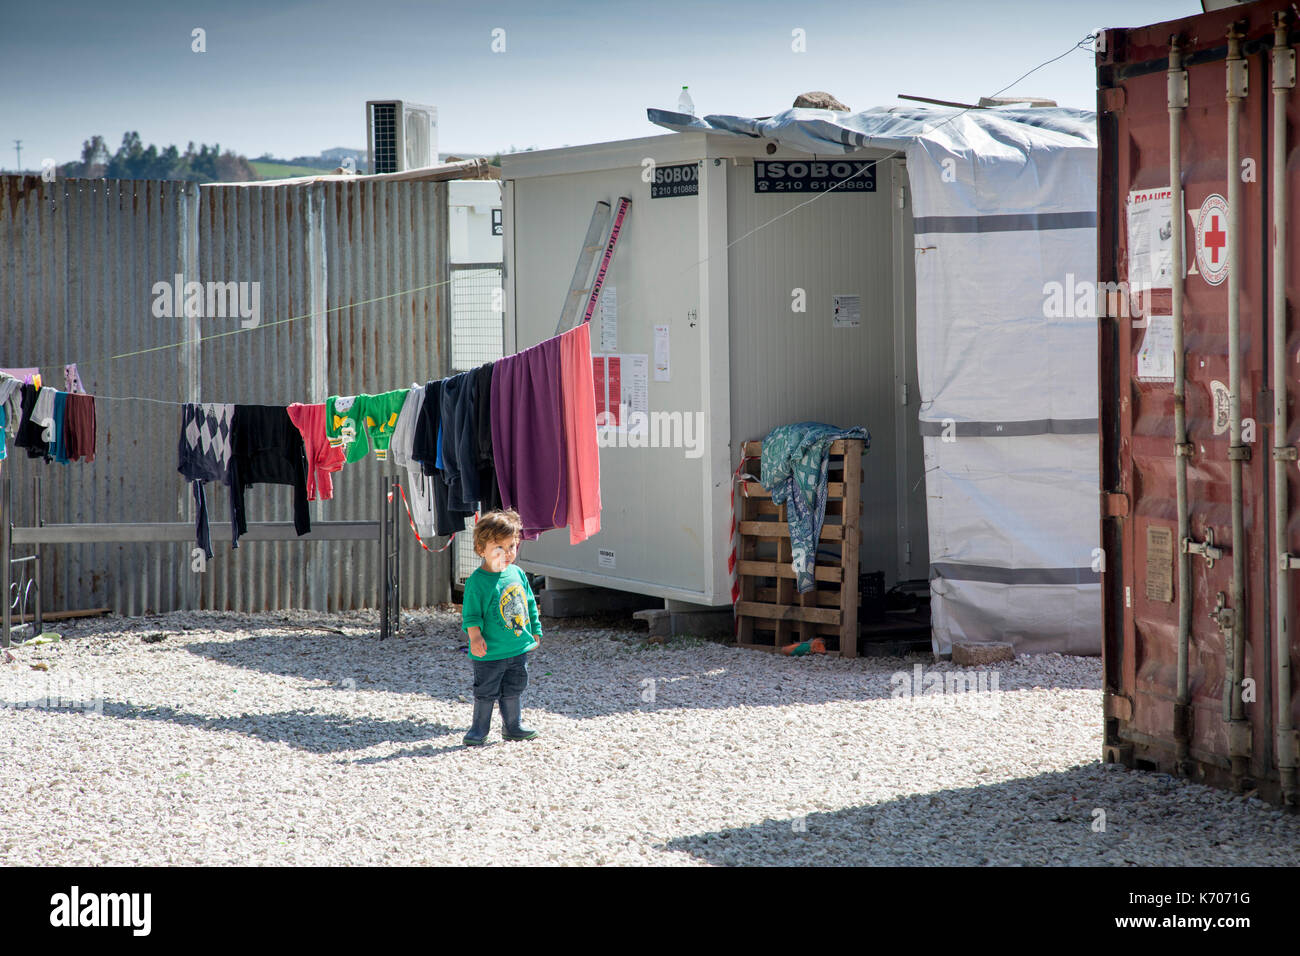 Sur le gravier entre les unités préfabriquées qui hébergent des réfugiés de Syrie, un enfant seul étudie le camp de réfugiés de Ritsona. Foreground : conteneur Croix-Rouge. Banque D'Images